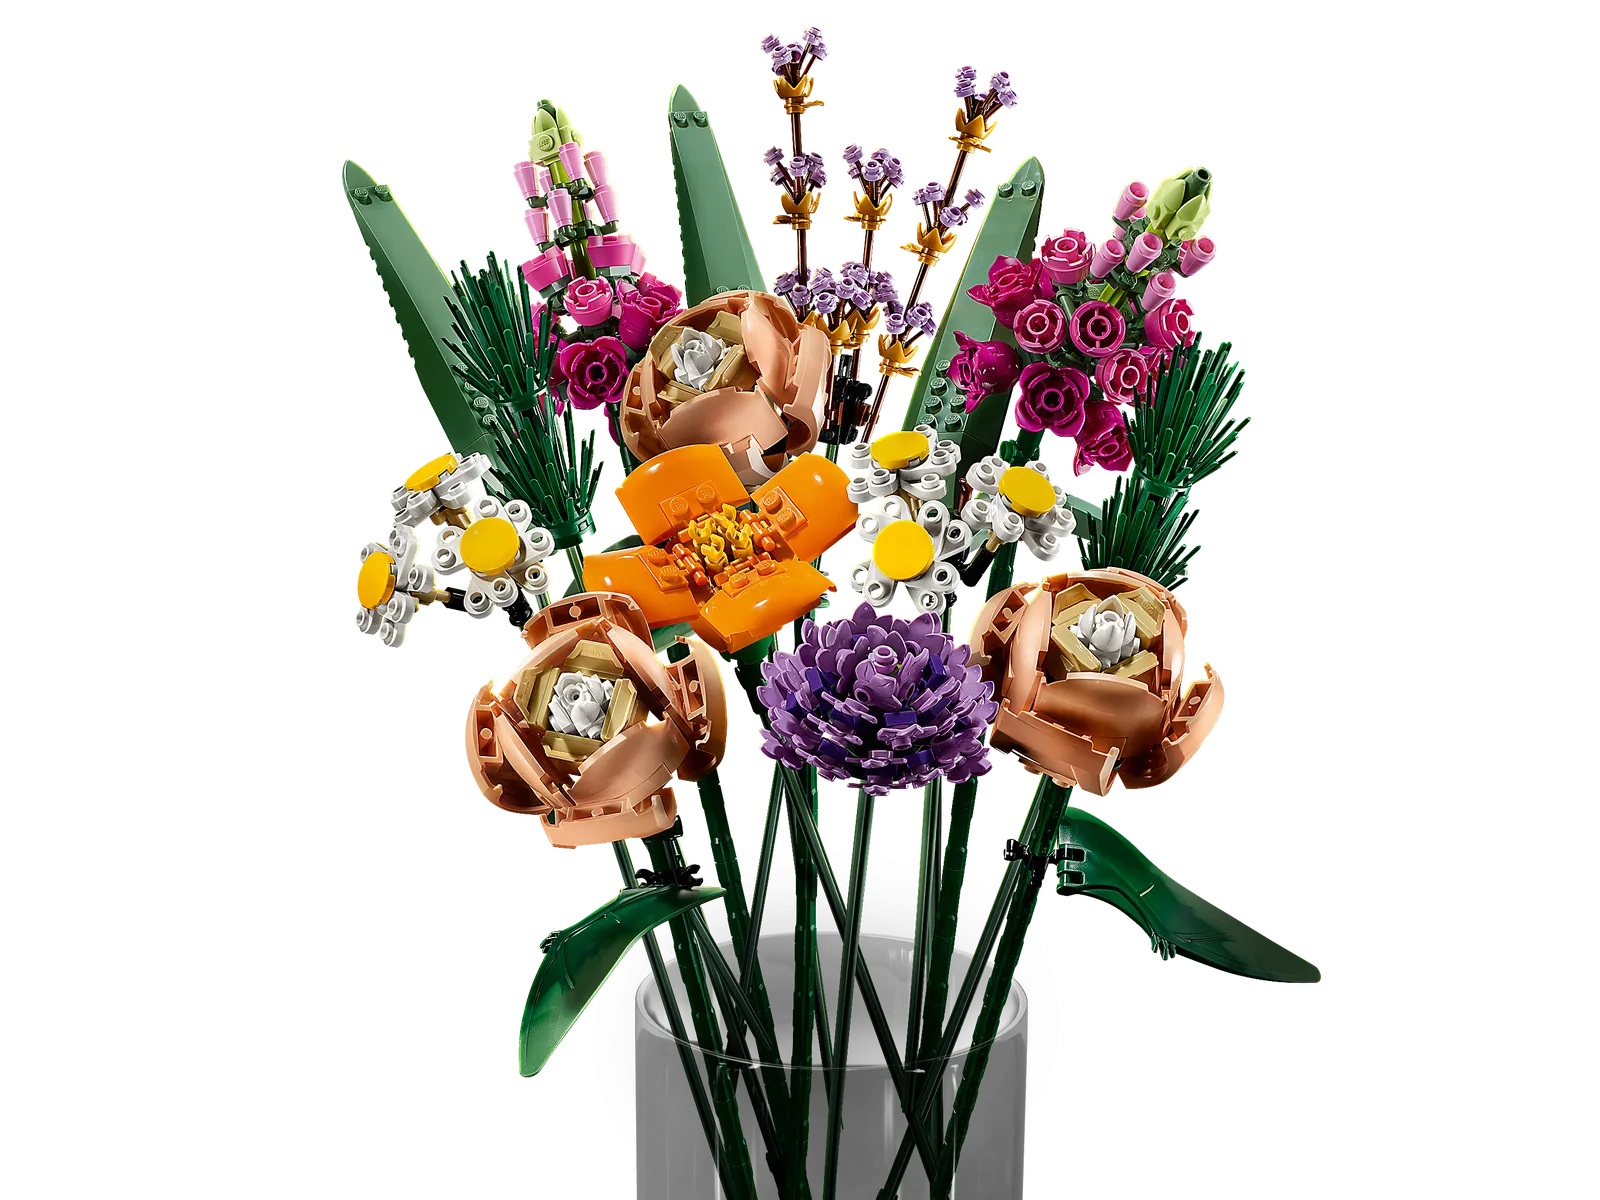 LEGO 10280 Bouquet di fiori, 756 pezzi, - Lego - Esseshop - Il tuo